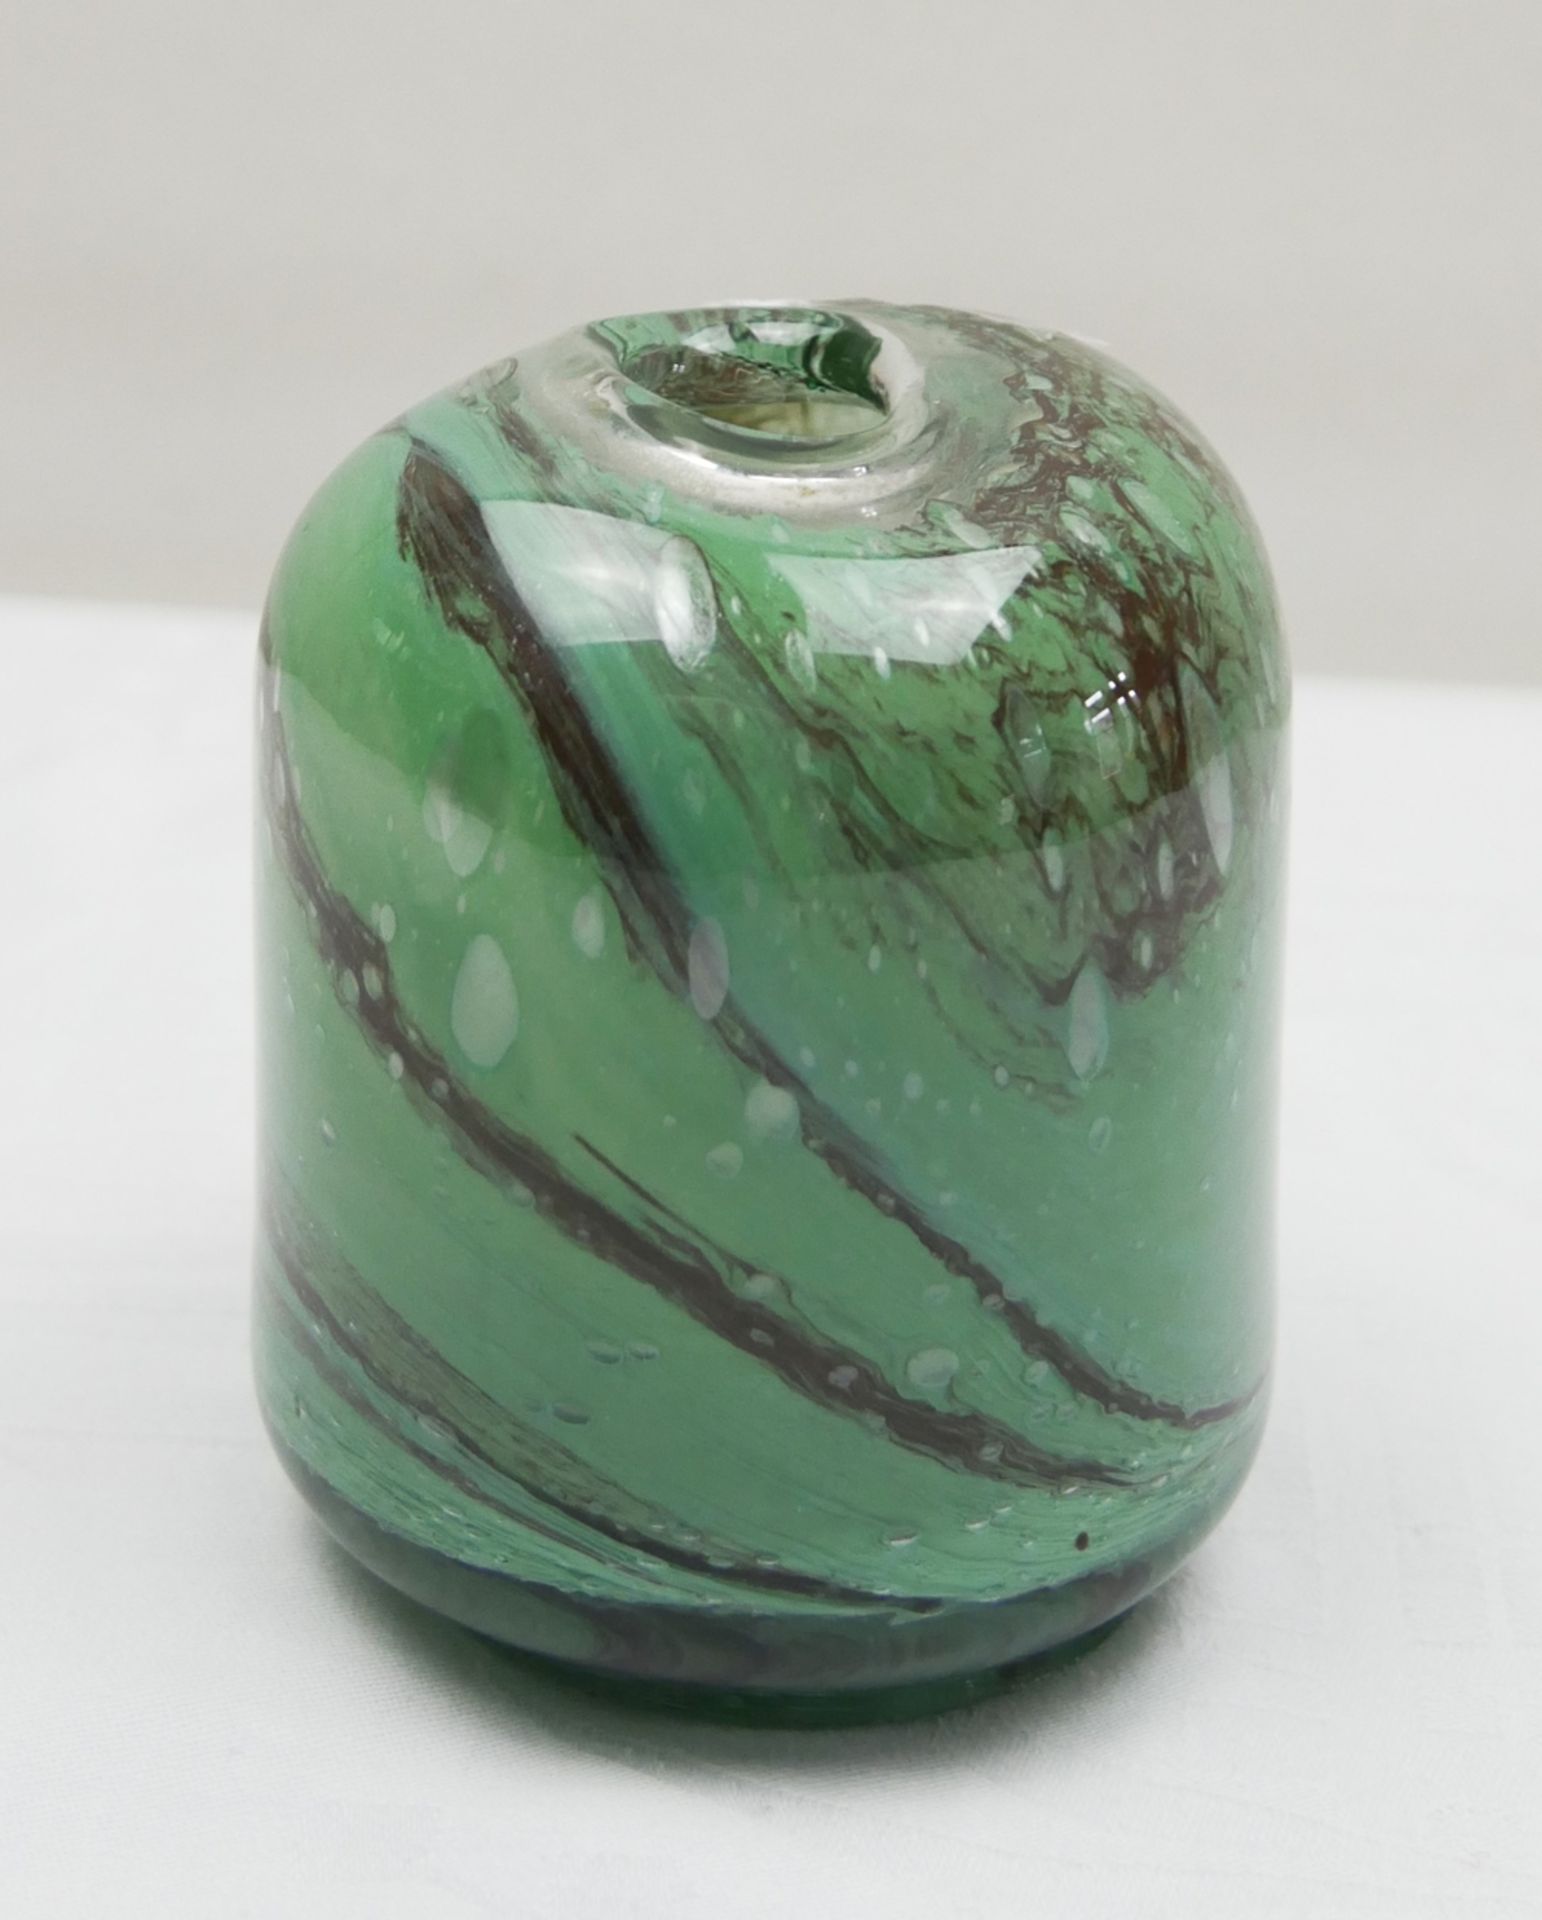 Quadratisch runde Glasvase mit Luftbläschen und grün/braunen Farbverlauf. Höhe ca. 10 cm